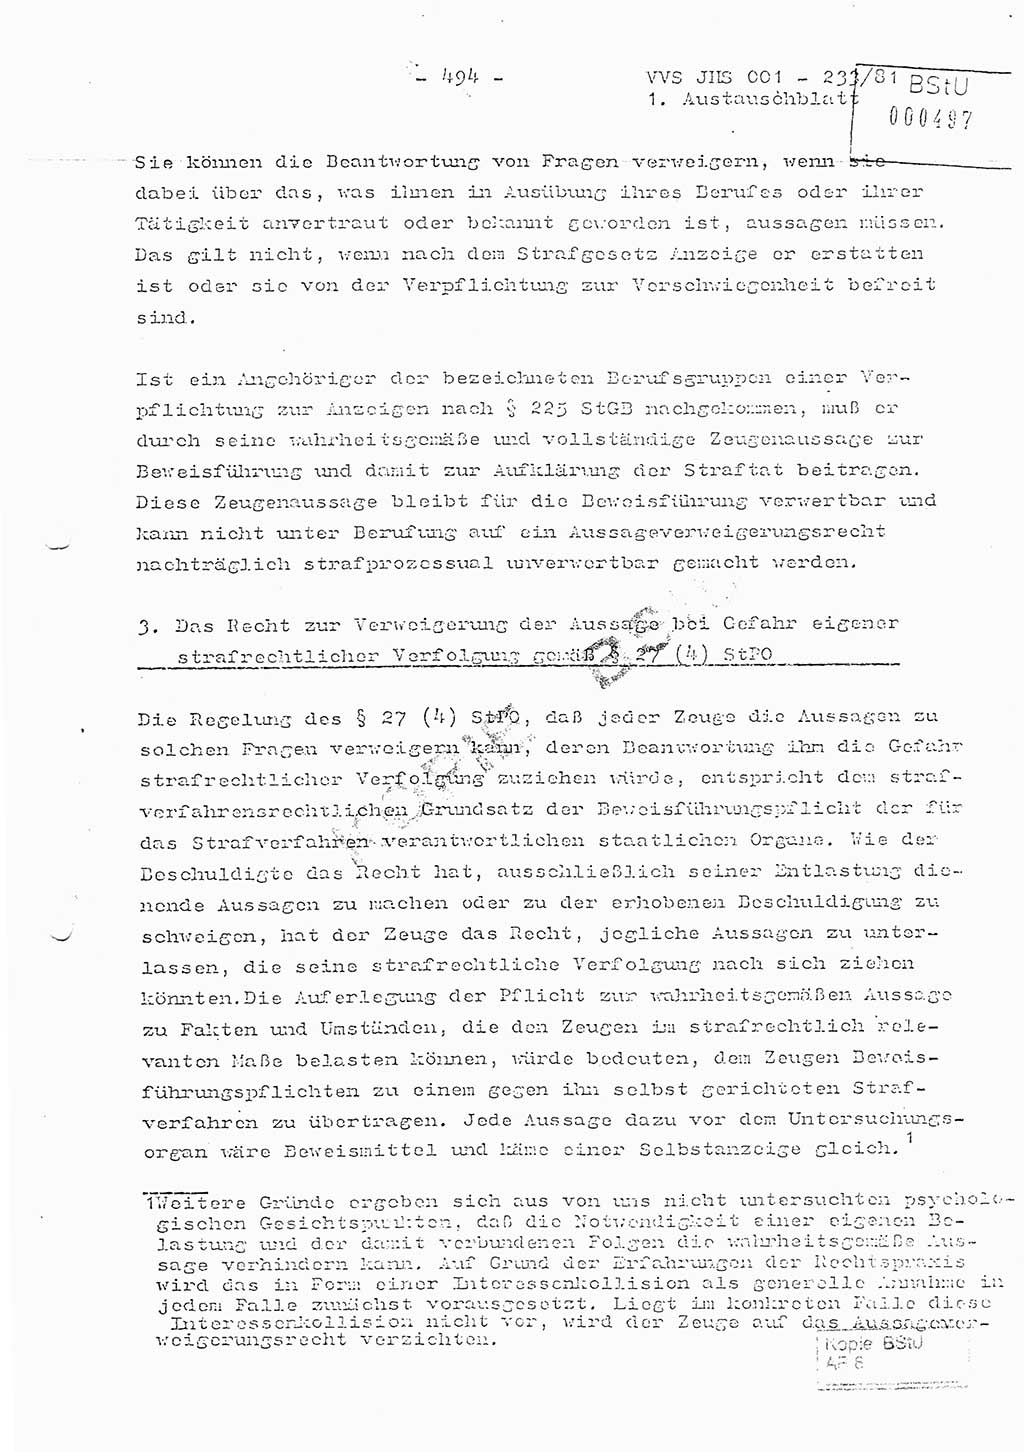 Dissertation Oberstleutnant Horst Zank (JHS), Oberstleutnant Dr. Karl-Heinz Knoblauch (JHS), Oberstleutnant Gustav-Adolf Kowalewski (HA Ⅸ), Oberstleutnant Wolfgang Plötner (HA Ⅸ), Ministerium für Staatssicherheit (MfS) [Deutsche Demokratische Republik (DDR)], Juristische Hochschule (JHS), Vertrauliche Verschlußsache (VVS) o001-233/81, Potsdam 1981, Blatt 494 (Diss. MfS DDR JHS VVS o001-233/81 1981, Bl. 494)